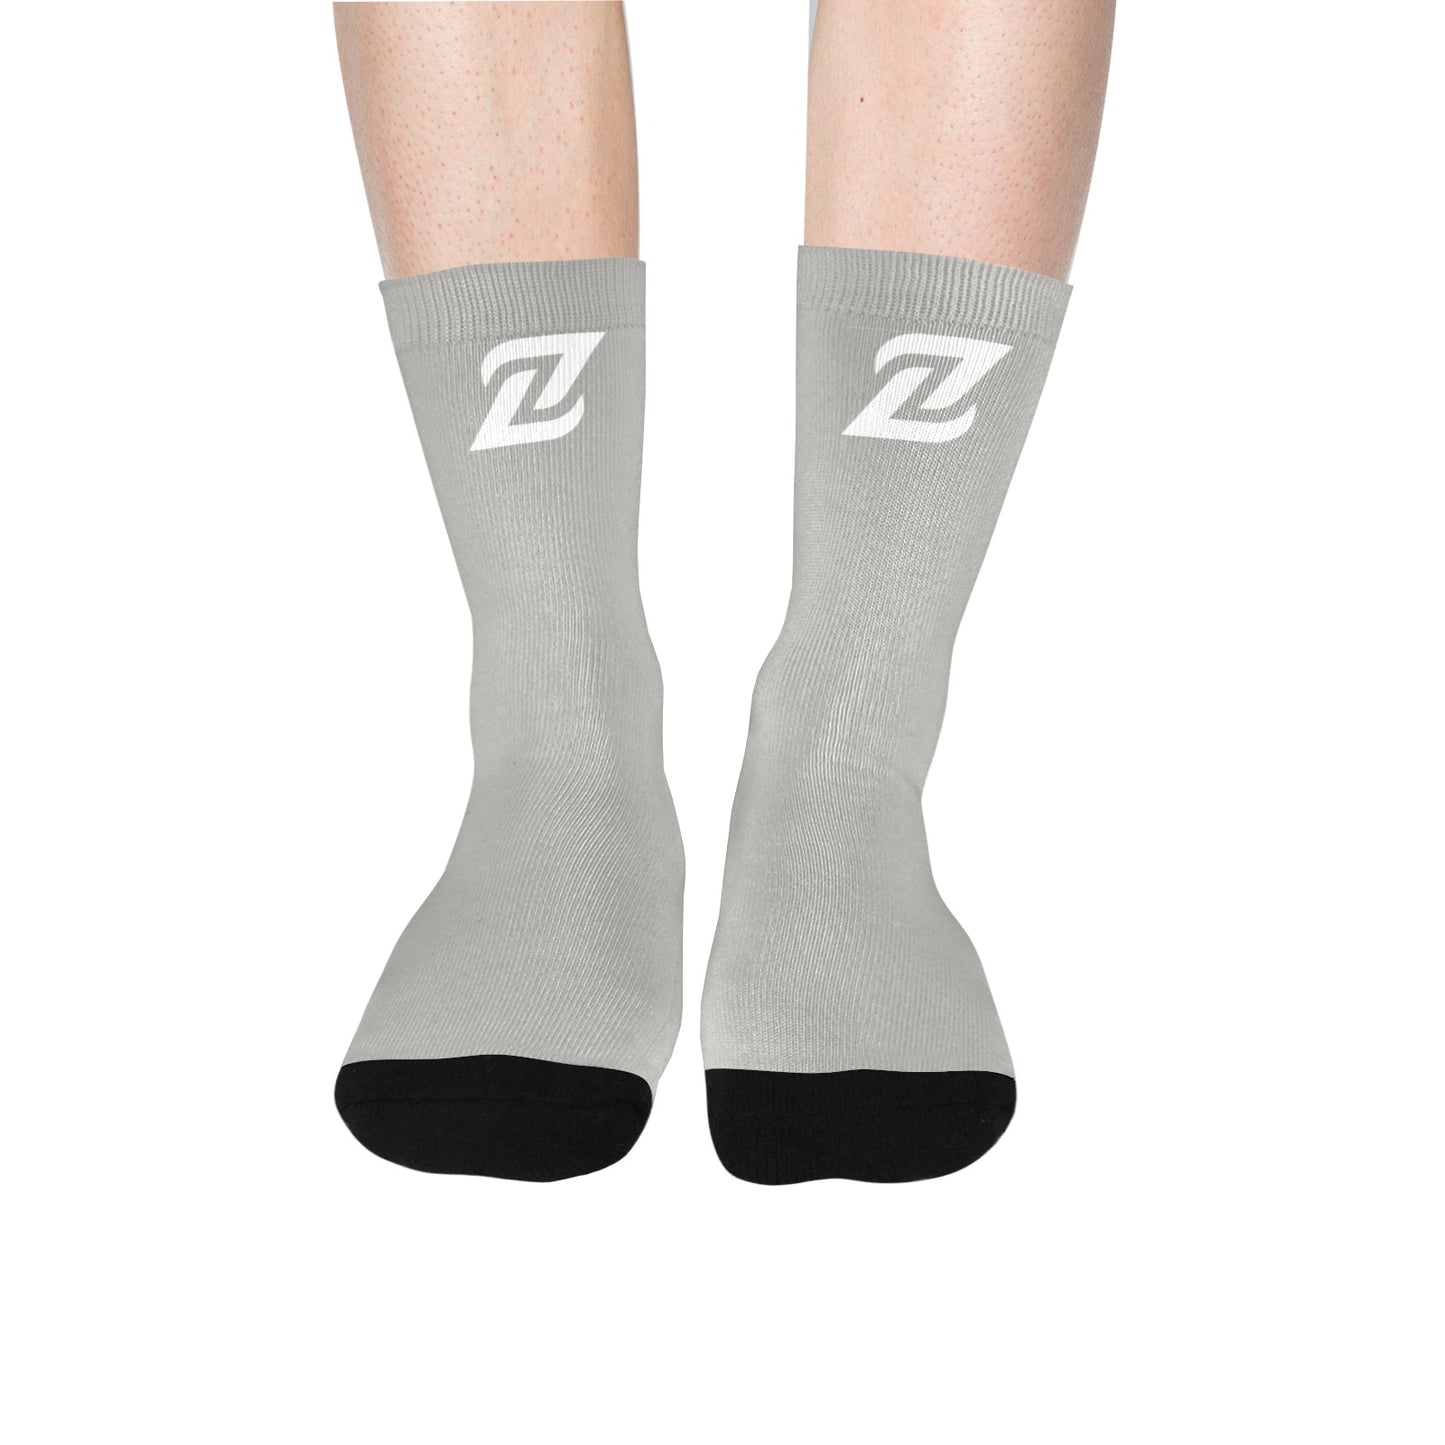 Zen Socks - Gray